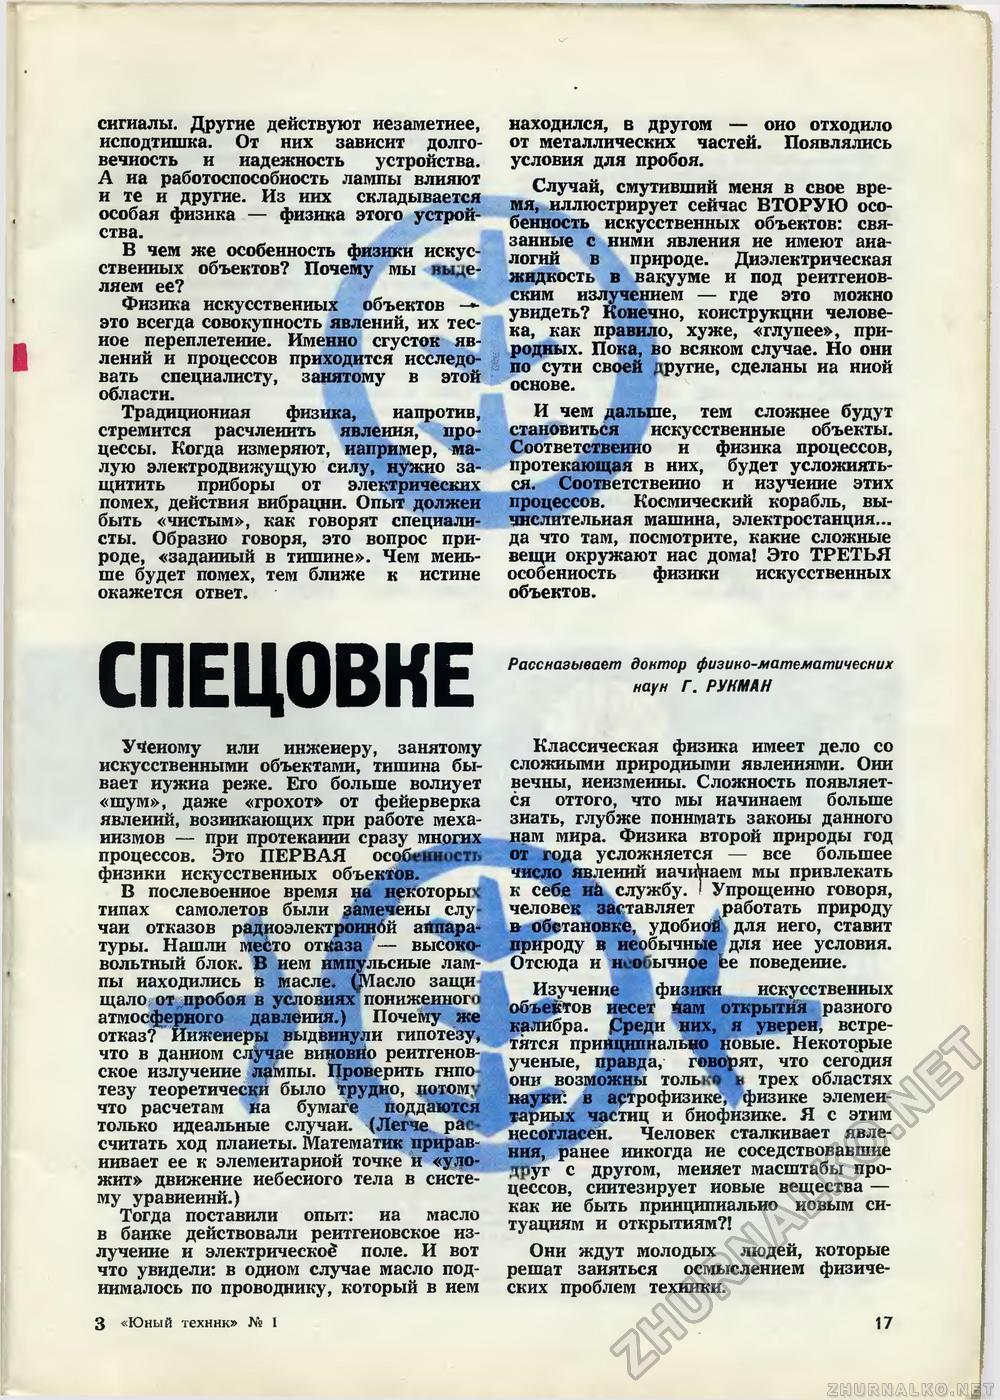   1971-01,  19